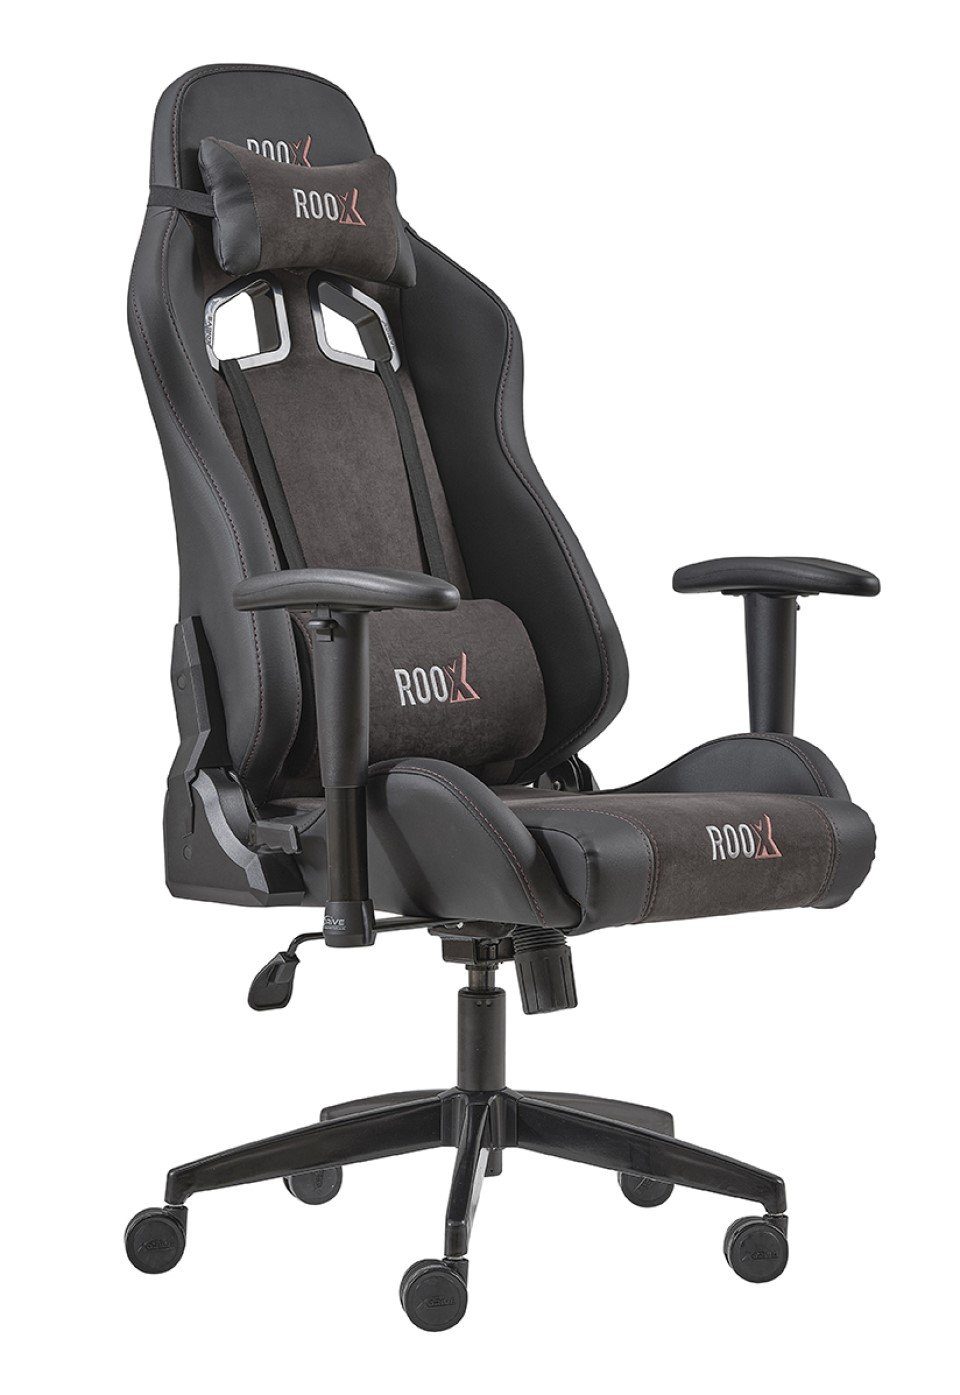 Roox Gaming-Stuhl Möbel-Lux